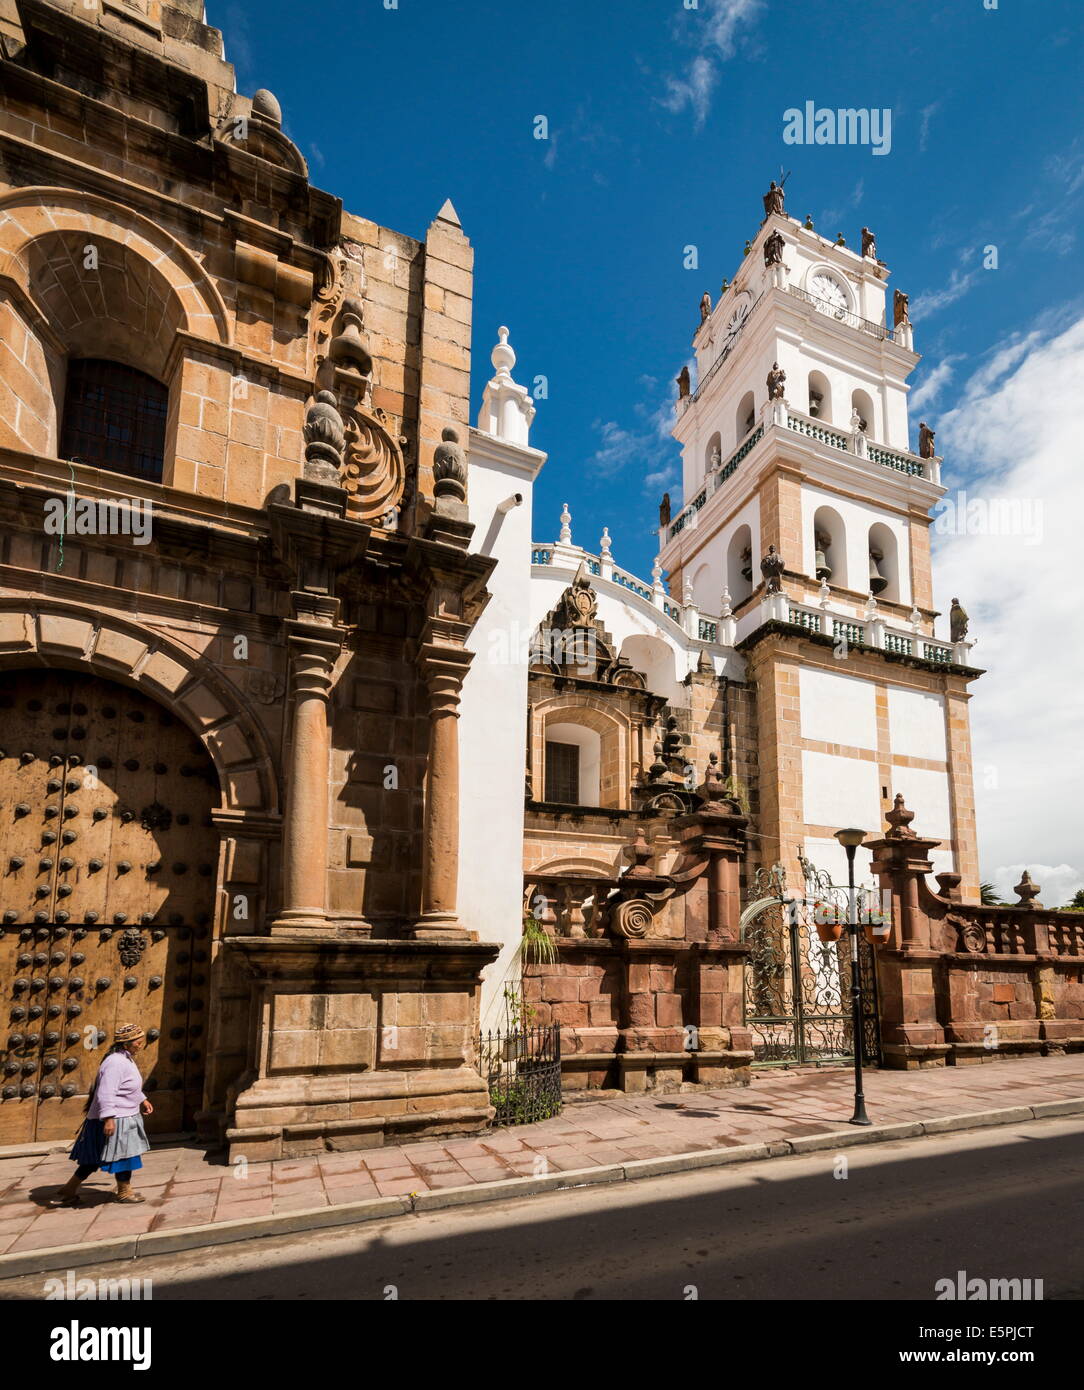 La Cathédrale, Sucre, UNESCO World Heritage Site, Bolivie, Amérique du Sud Banque D'Images